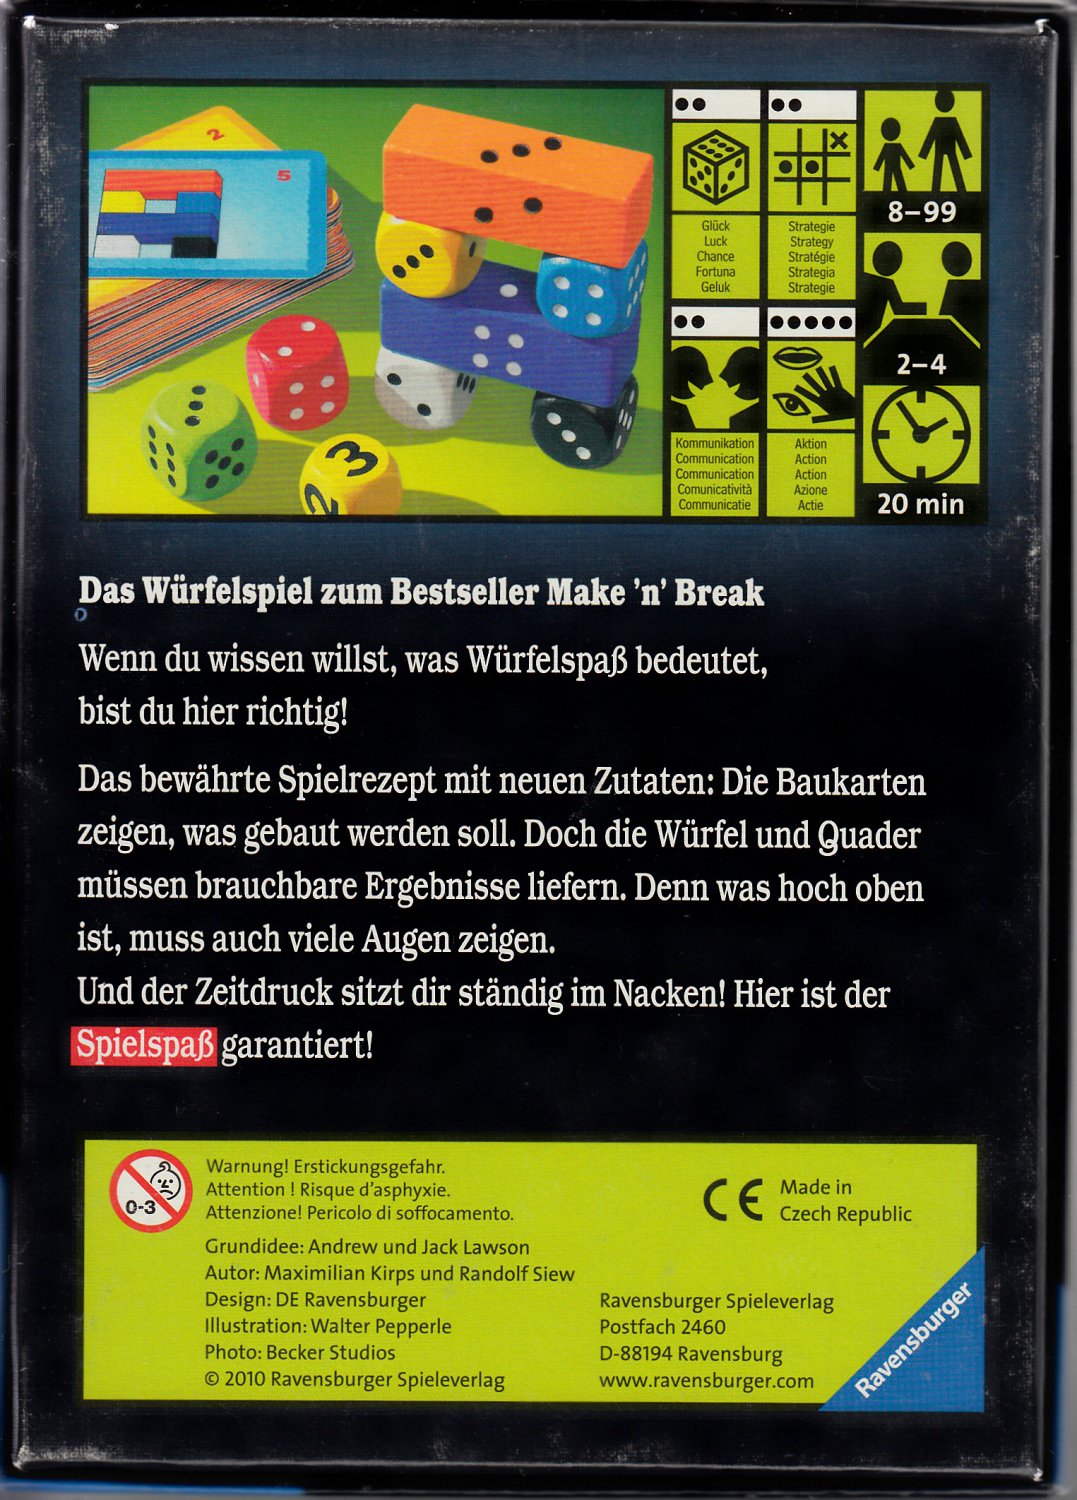 Make 'n' Break“ (Maximilian Kirps und Randolf Siew) – Spiel gebraucht kaufen  – A02Ase5C41ZZs